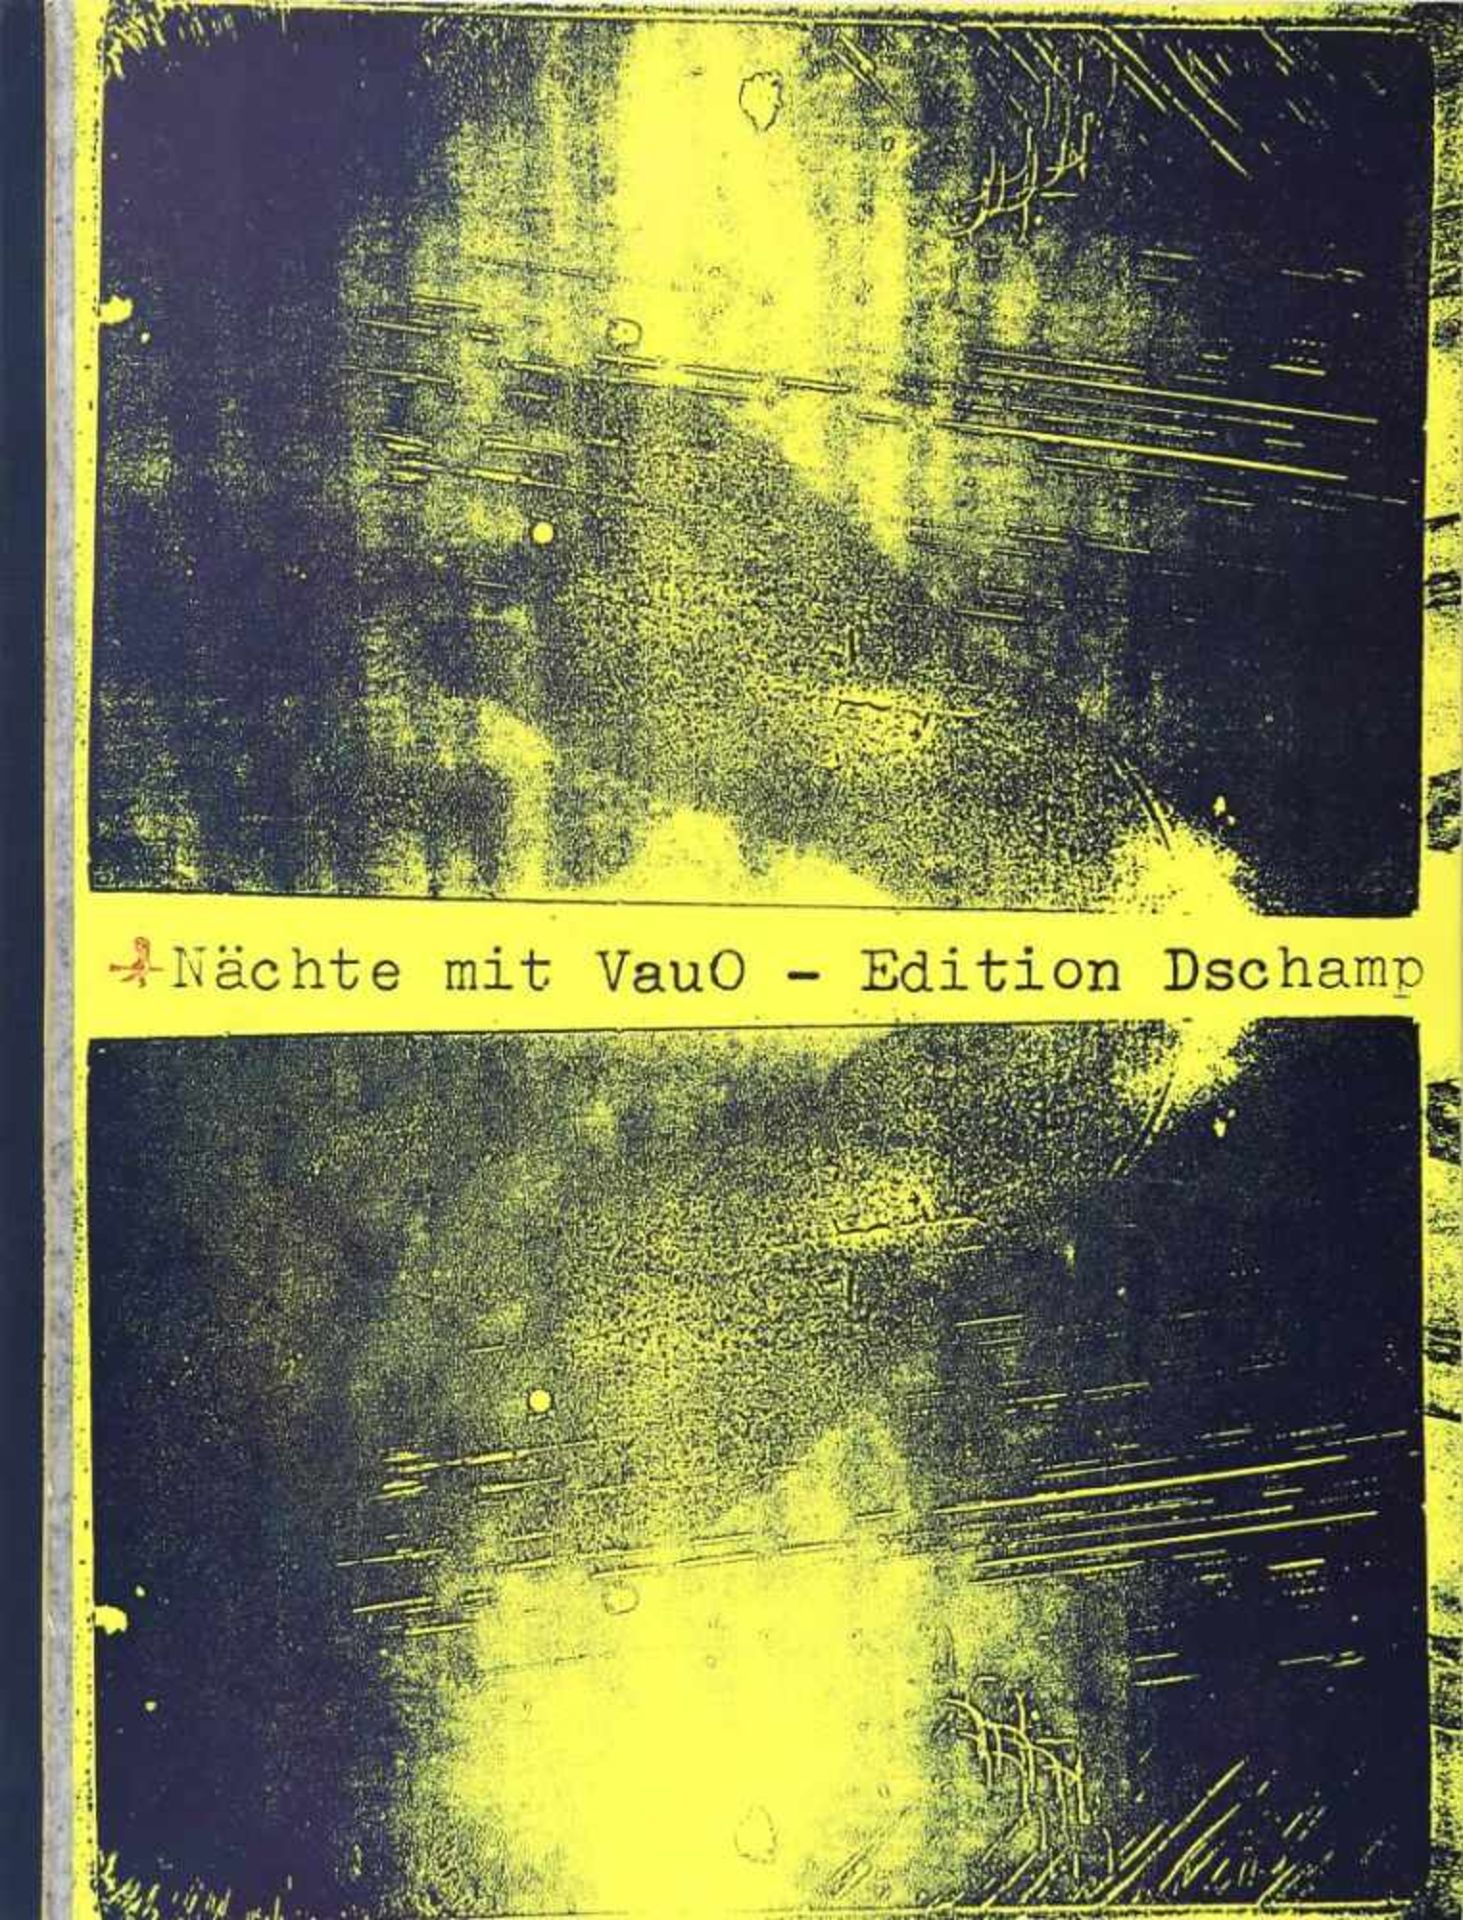 Edition Dschamp. -Hübsch, Hadayatullah:Nächte mit VauO. Zur Einführung: Michael Rutschky, Der